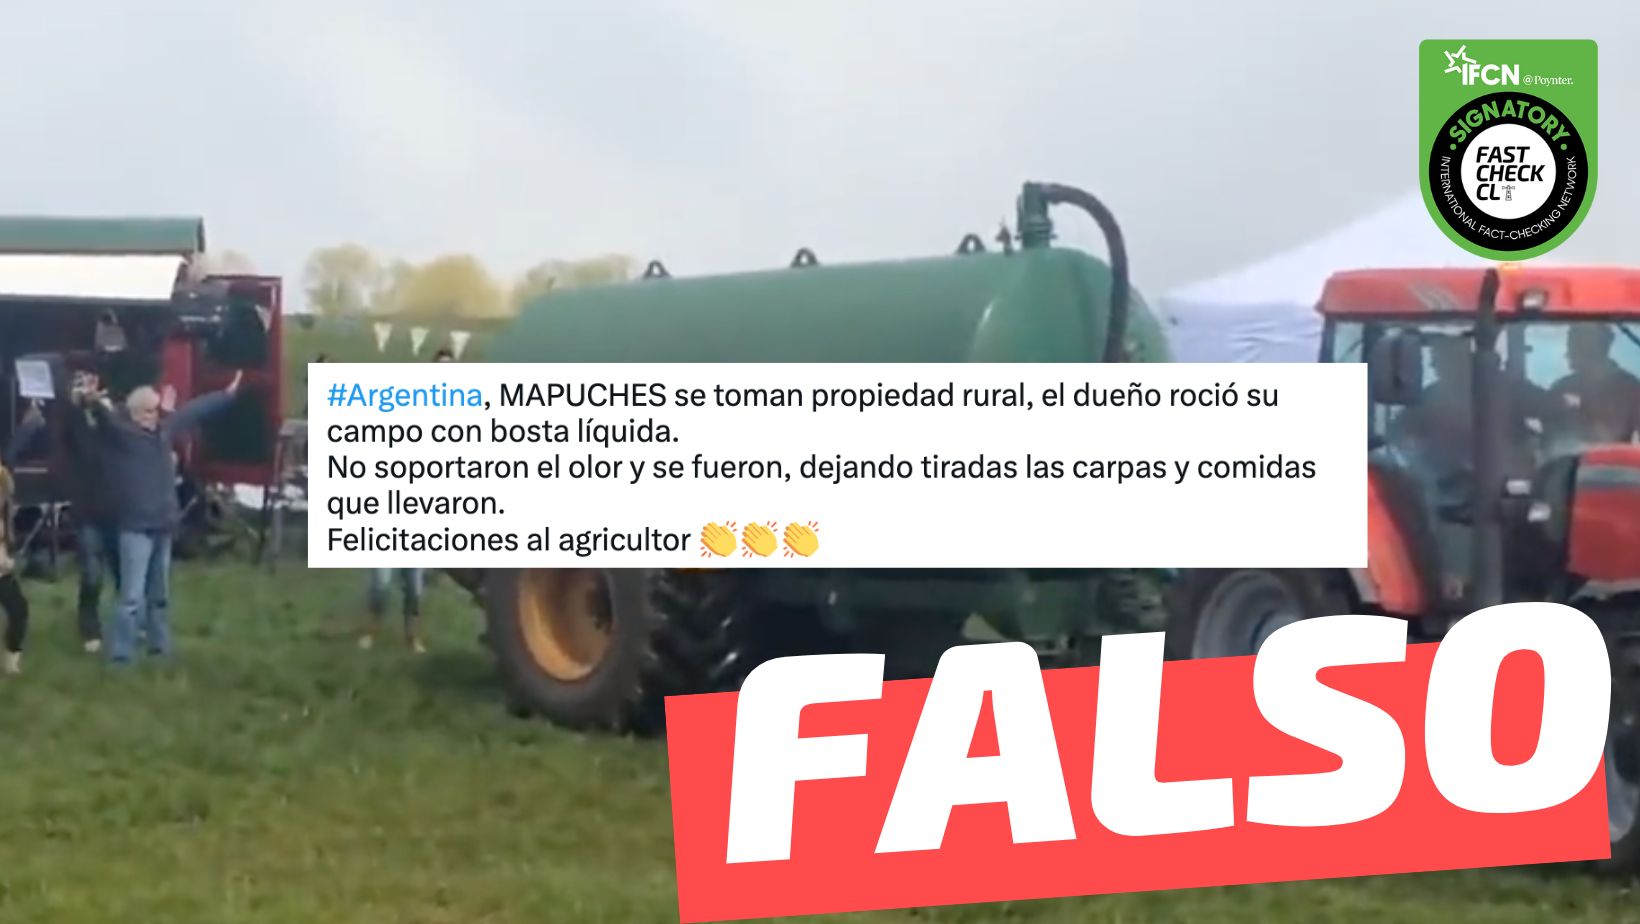 You are currently viewing (Video) “En Argentina, mapuches se toman propiedad rural, el dueño roció su campo con bosta líquida. No soportaron el olor y se fueron”: #Falso